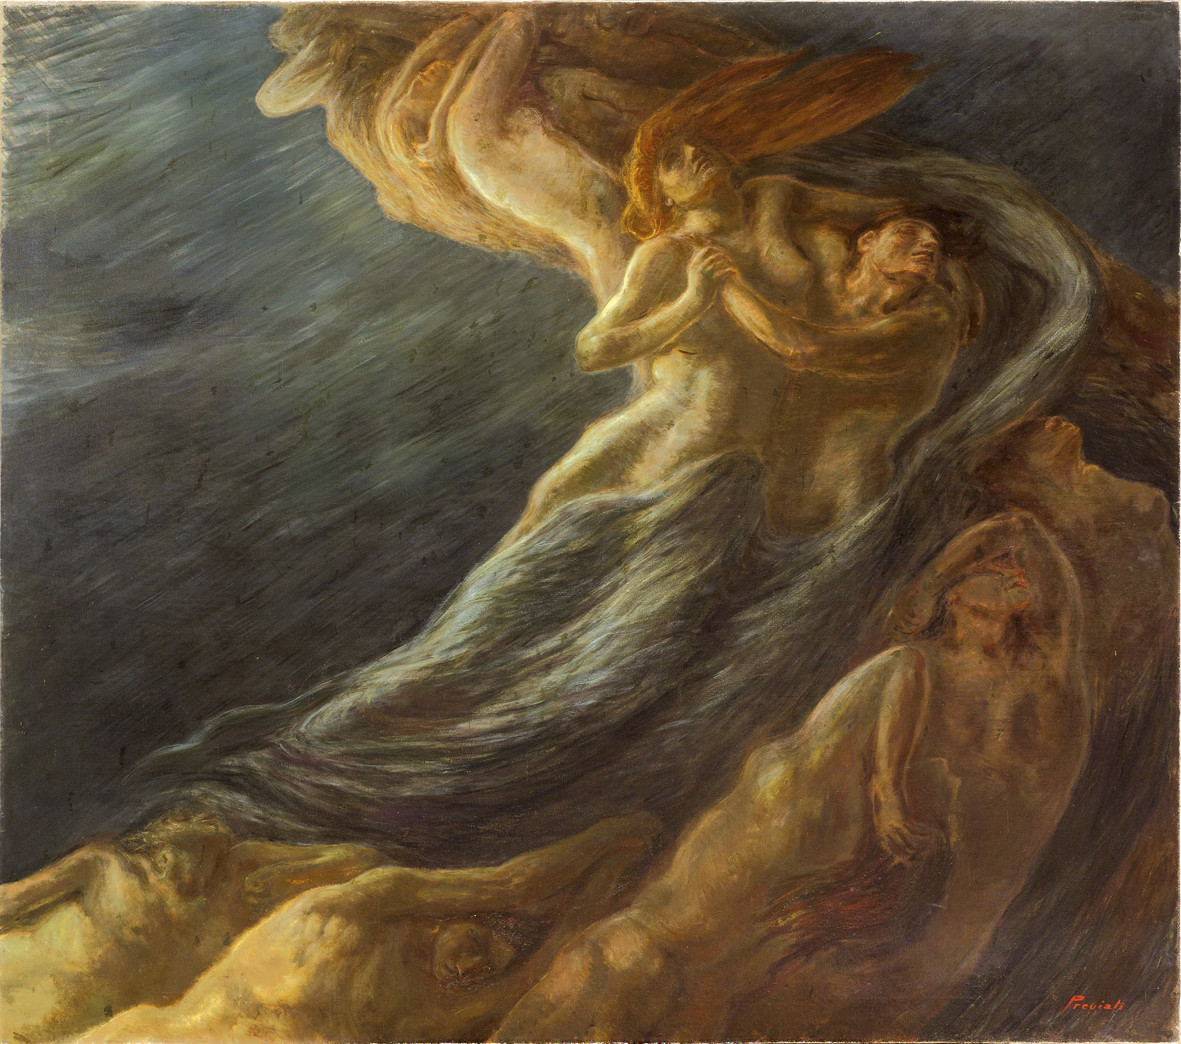 Gaetano Previati, Paolo e Francesca (1909; olio su tela, 230 x 260 cm; Ferrara, Gallerie d'Arte Moderna e Contemporanea, Museo dell'Ottocento)
